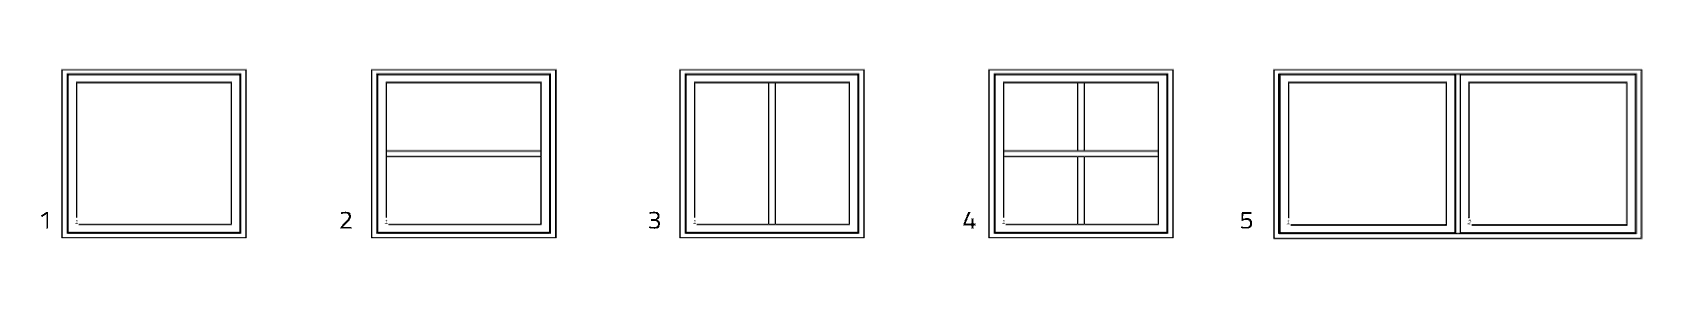 Topstyret og topvende vinduer